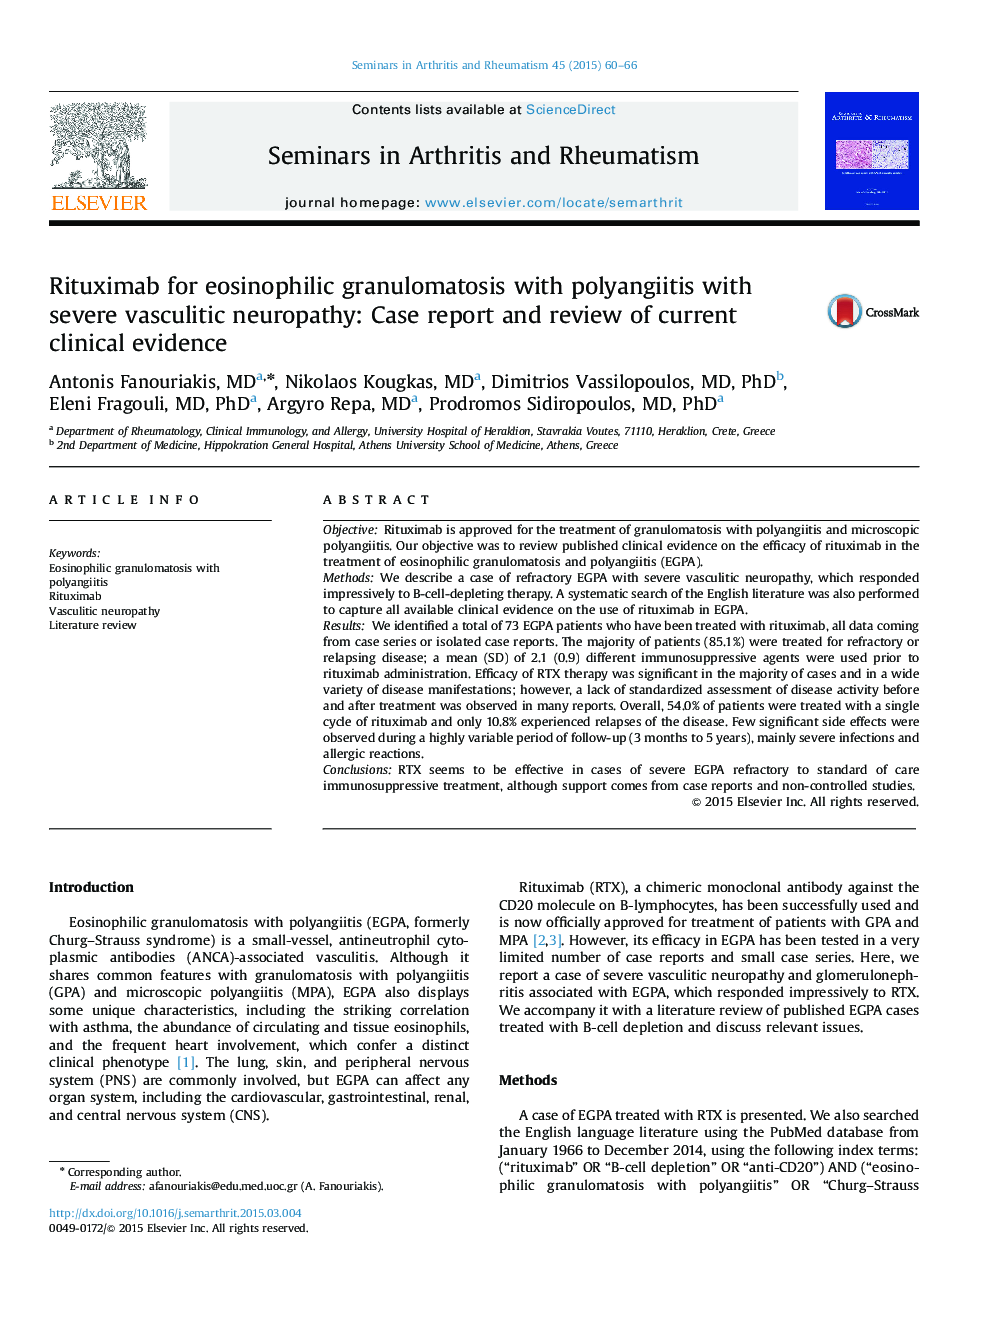 ریتوکسیماب برای گرانولوماتوز ائوزینوفیلی همراه با پولانژیت با نوروپاتی شدید واسکولیتیک: گزارش مورد و بررسی شواهد بالینی کنونی 